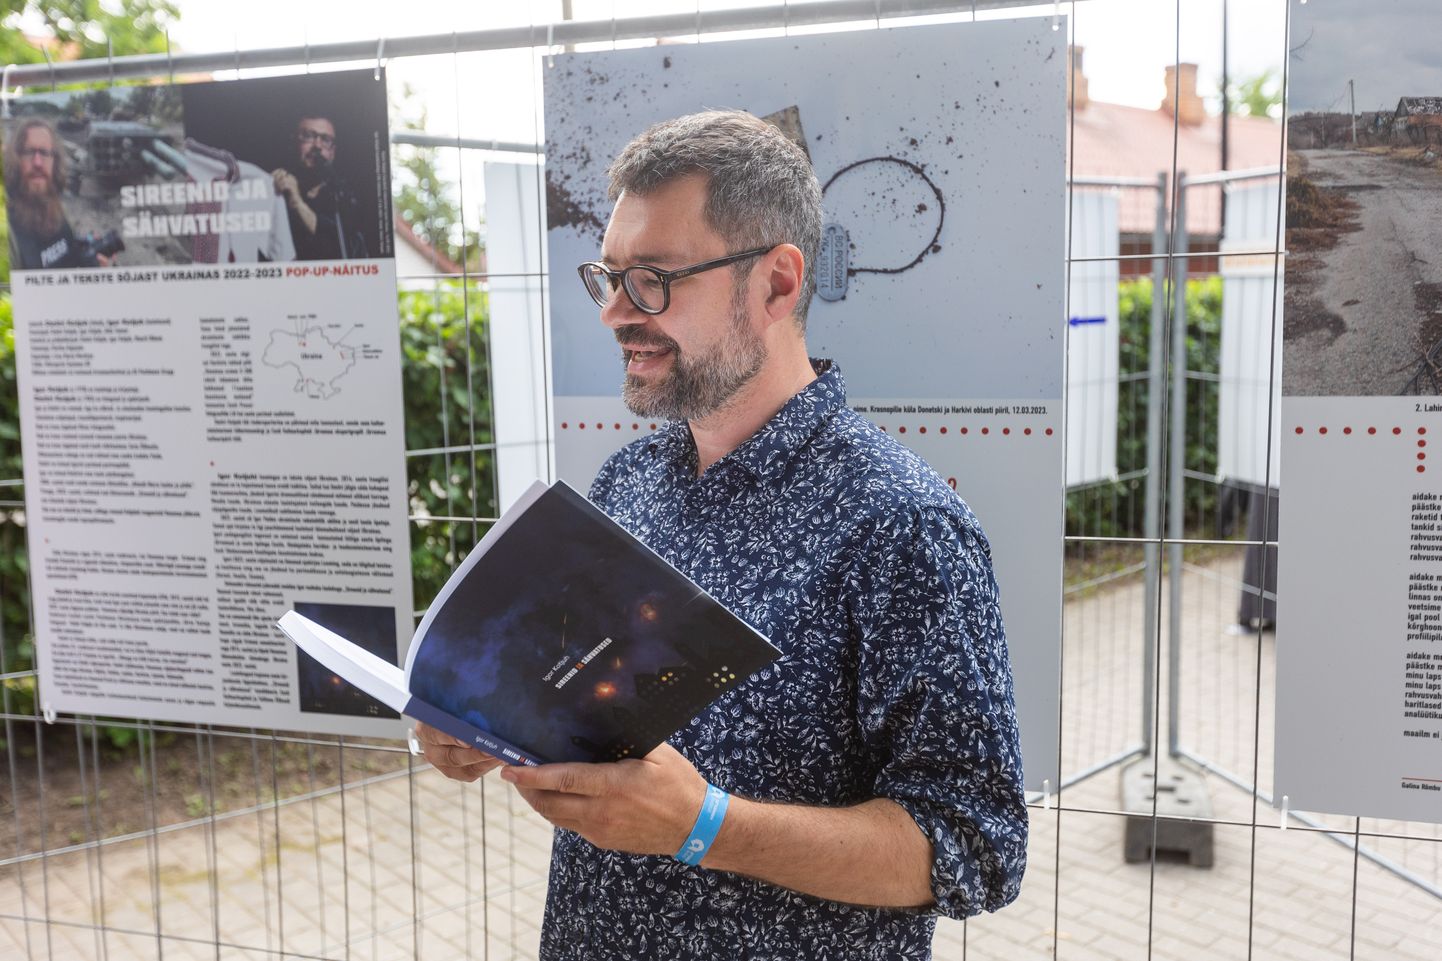 Paide kirjanik Igor Kotjuh suvise näituse "Sireenid ja sähvatused" avamisel Paides